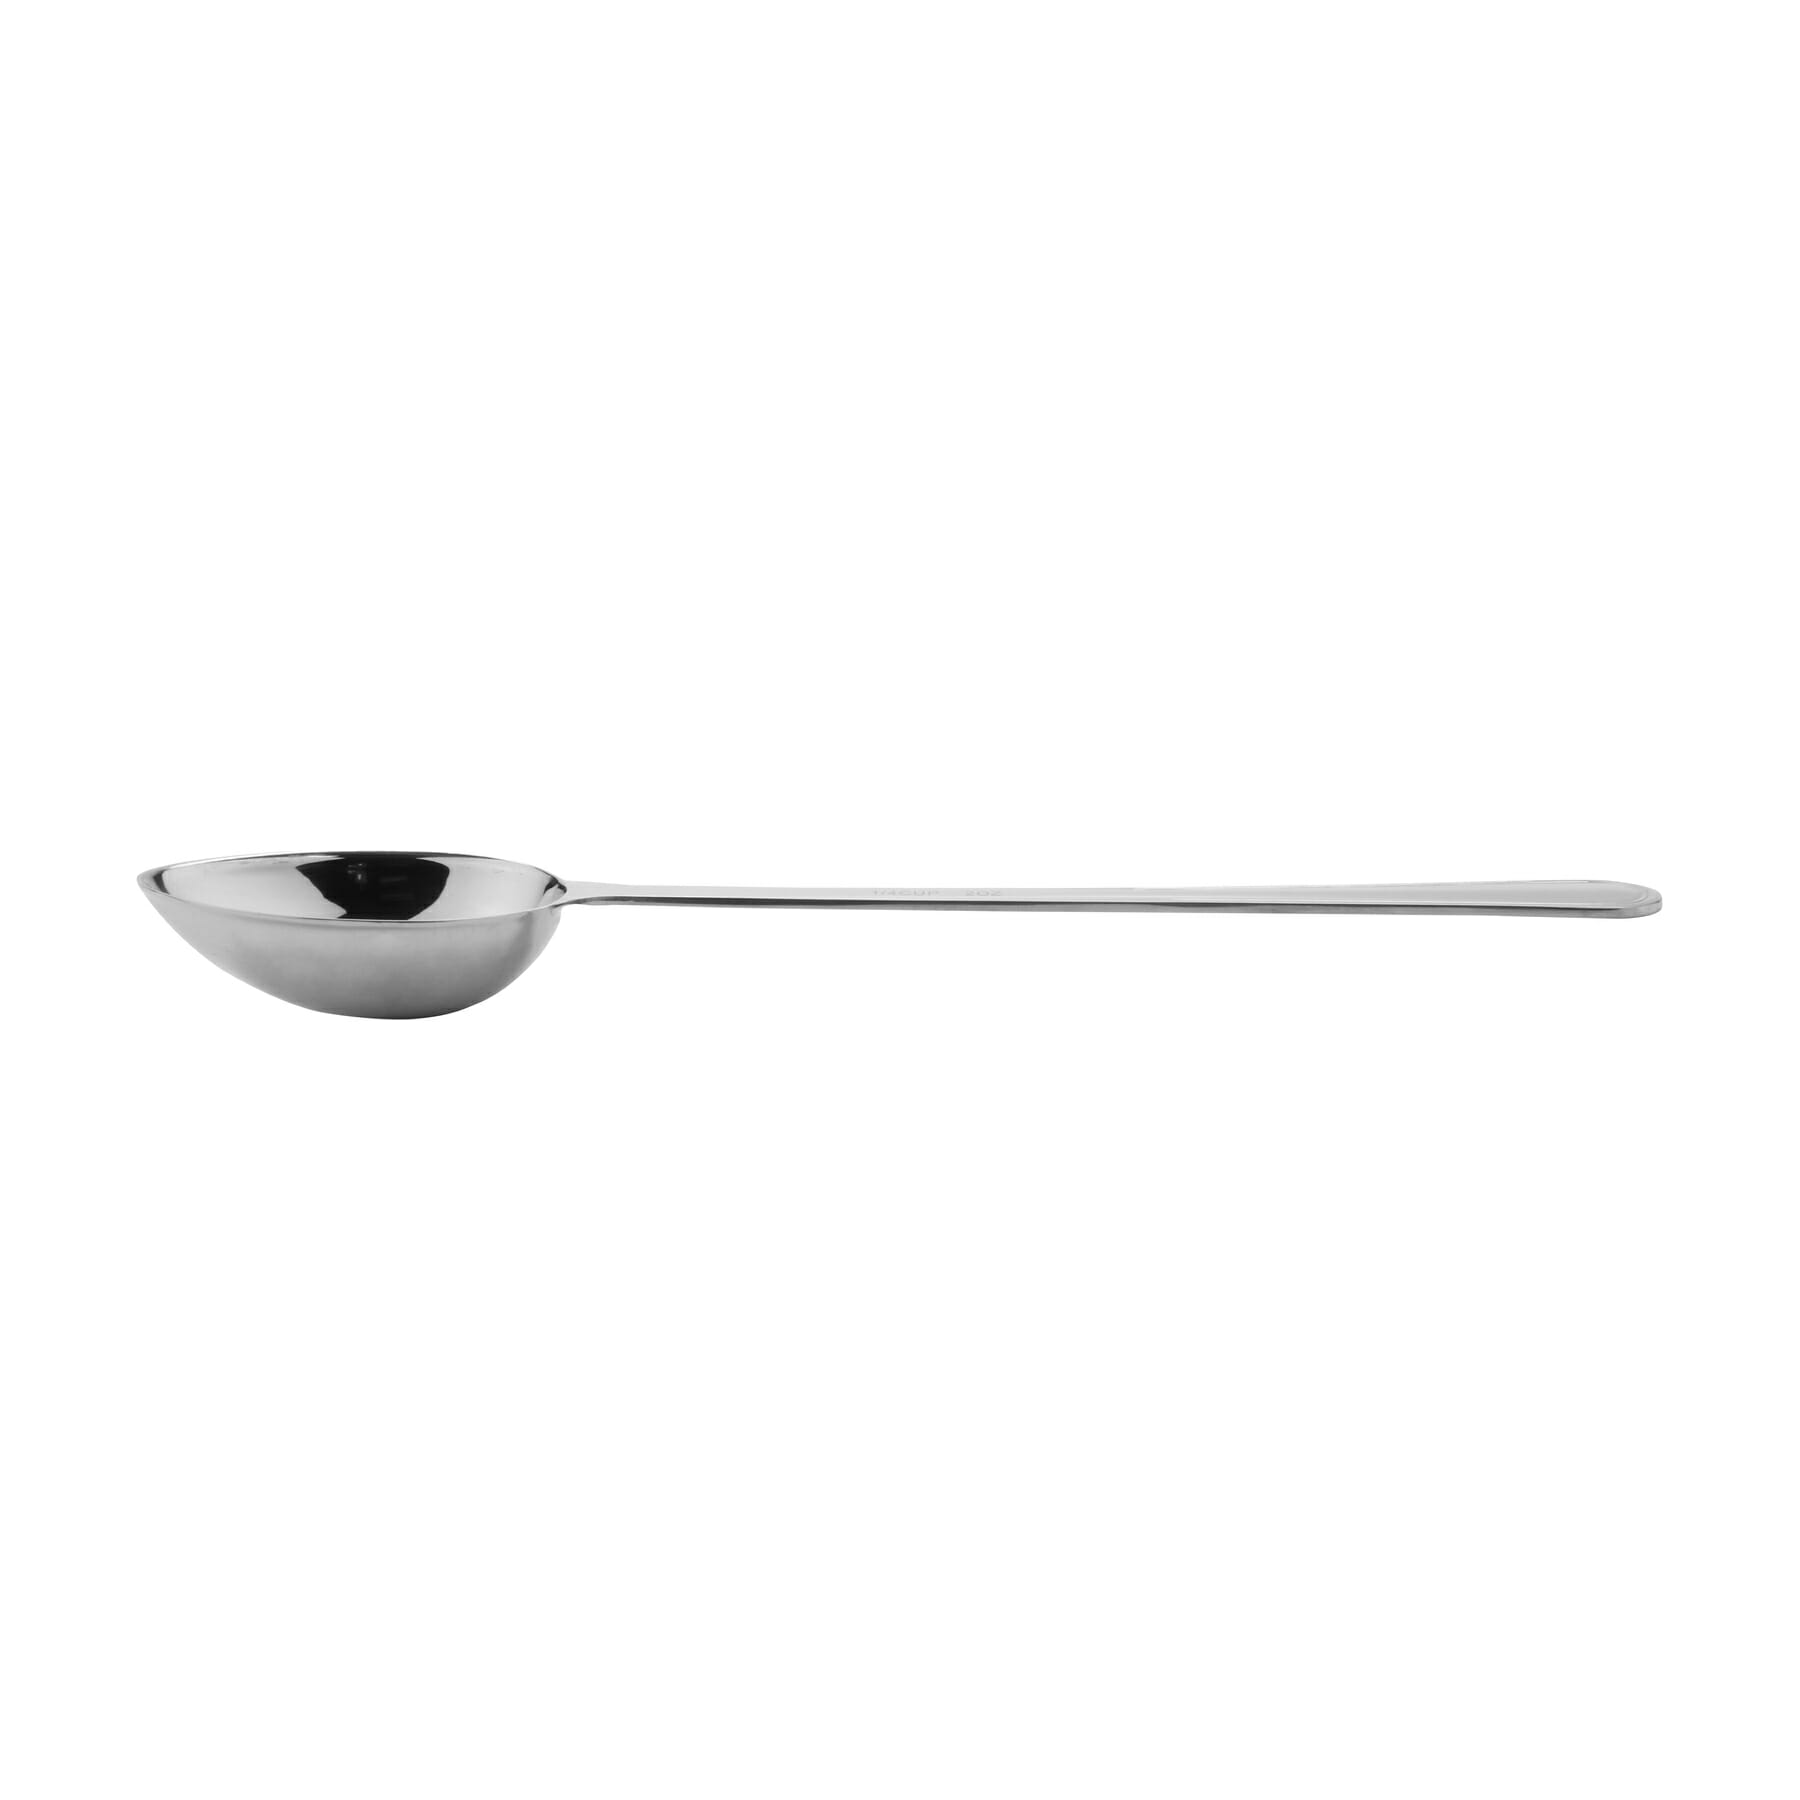 Portion Control Serving Spoons, Serving Utensils, Set of 8